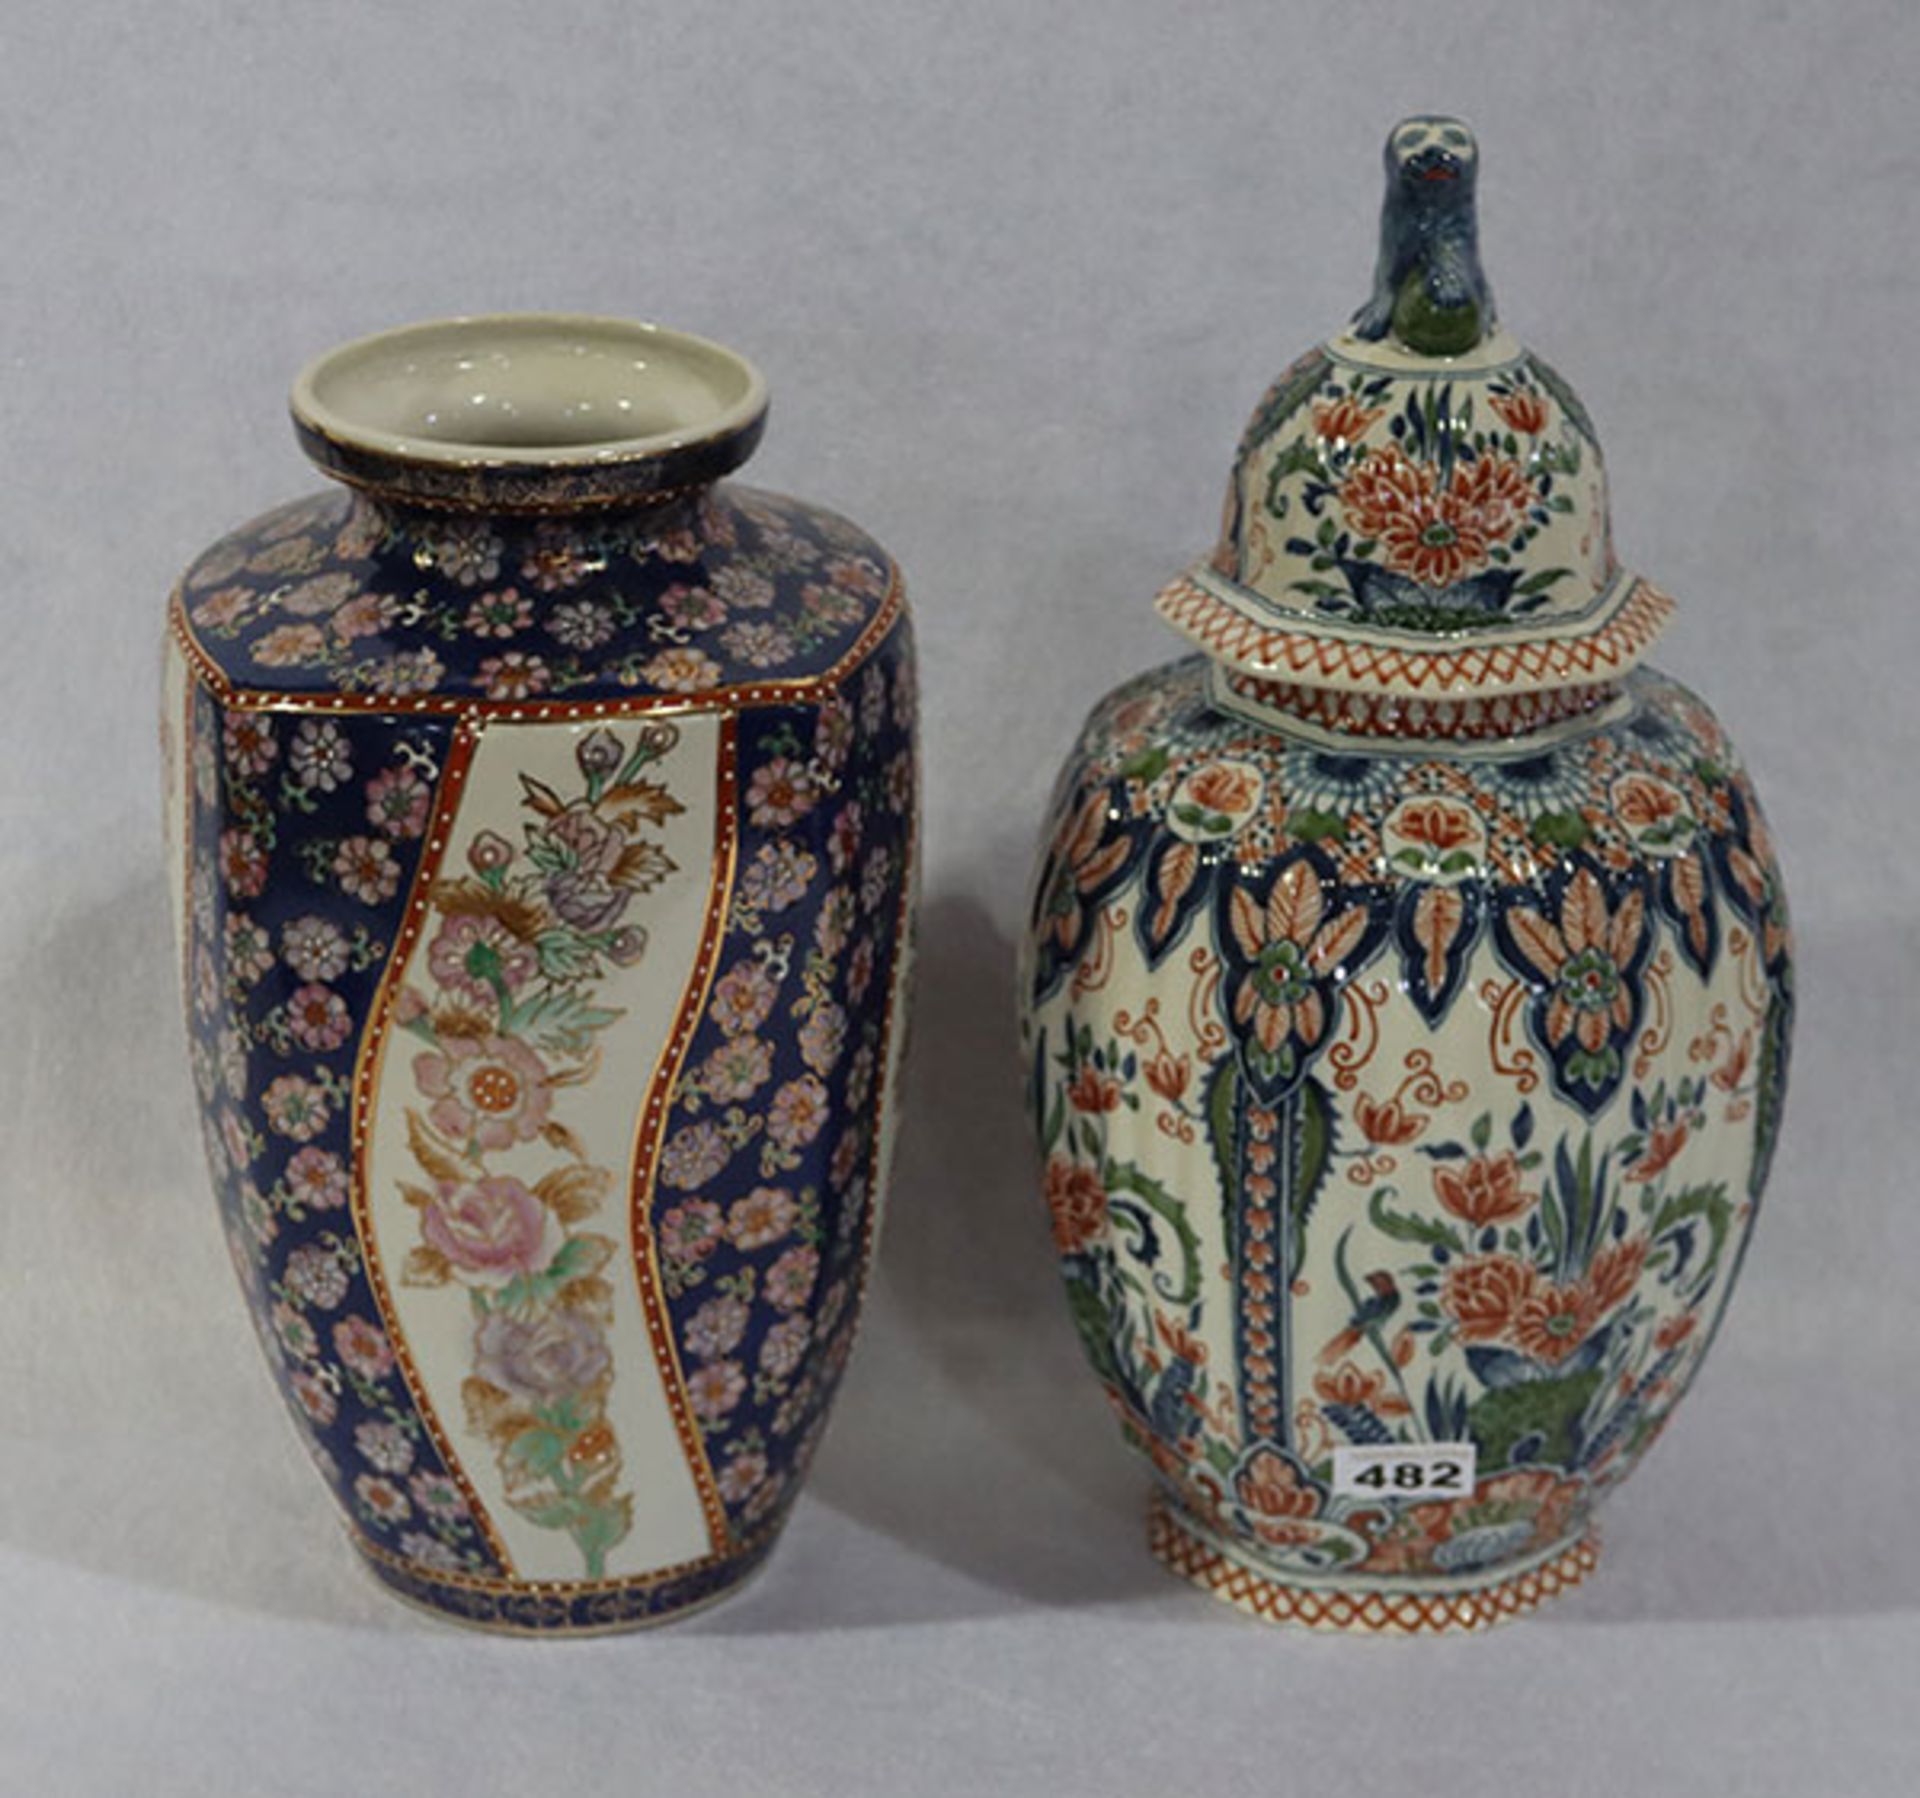 Asiatische Deckelvase und Blumenvase, beides mit Floraldekor, H 43/35 cm, Gebrauchsspuren